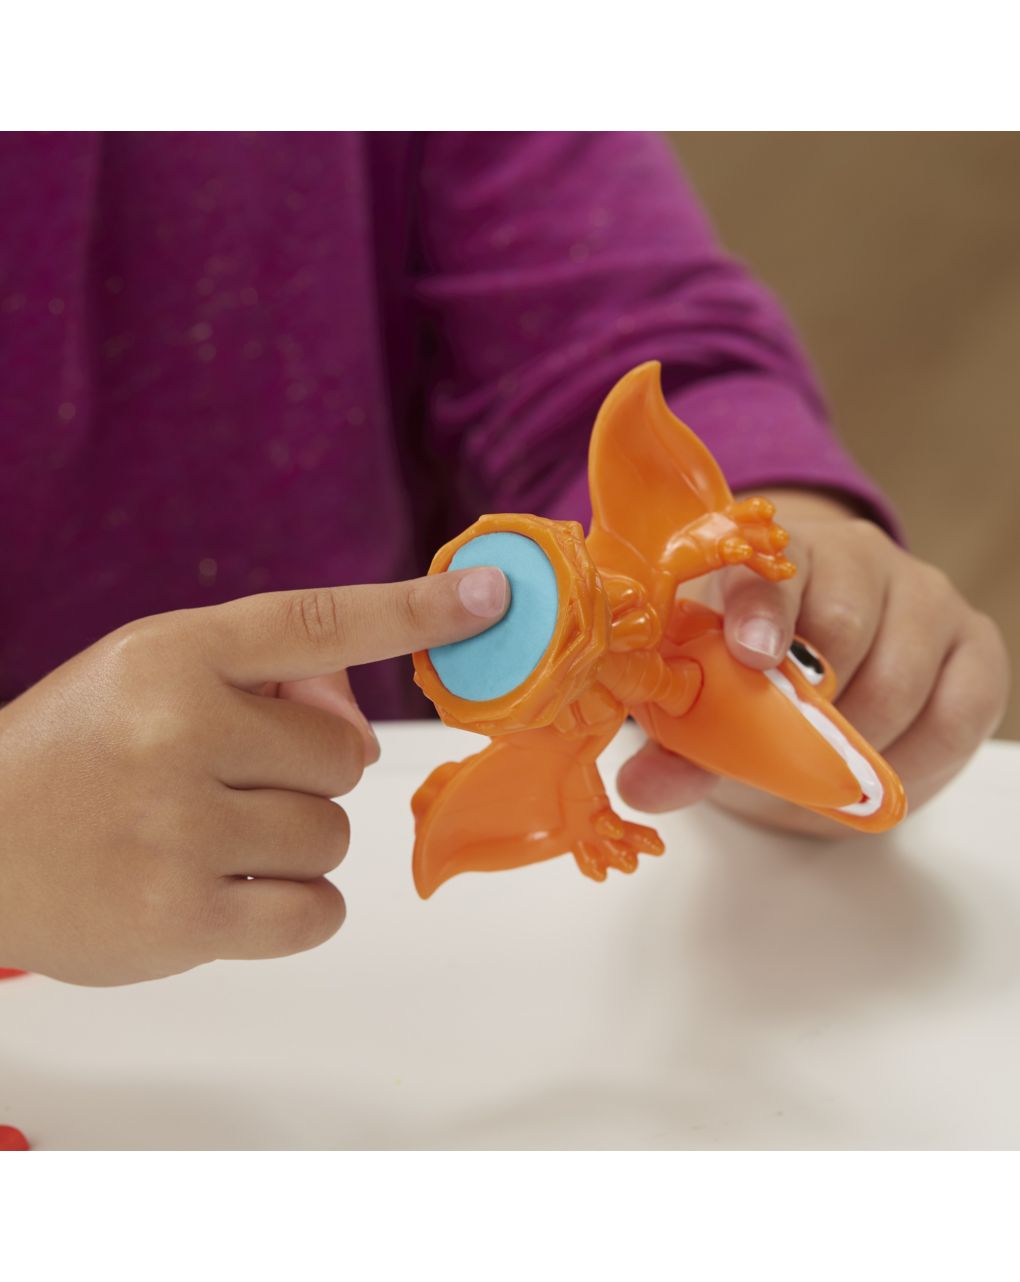 Il t-rex mangione: dinosauro con suoni e 3 uova 3+ anni - play-doh hasbro dino-crew - Play-Doh